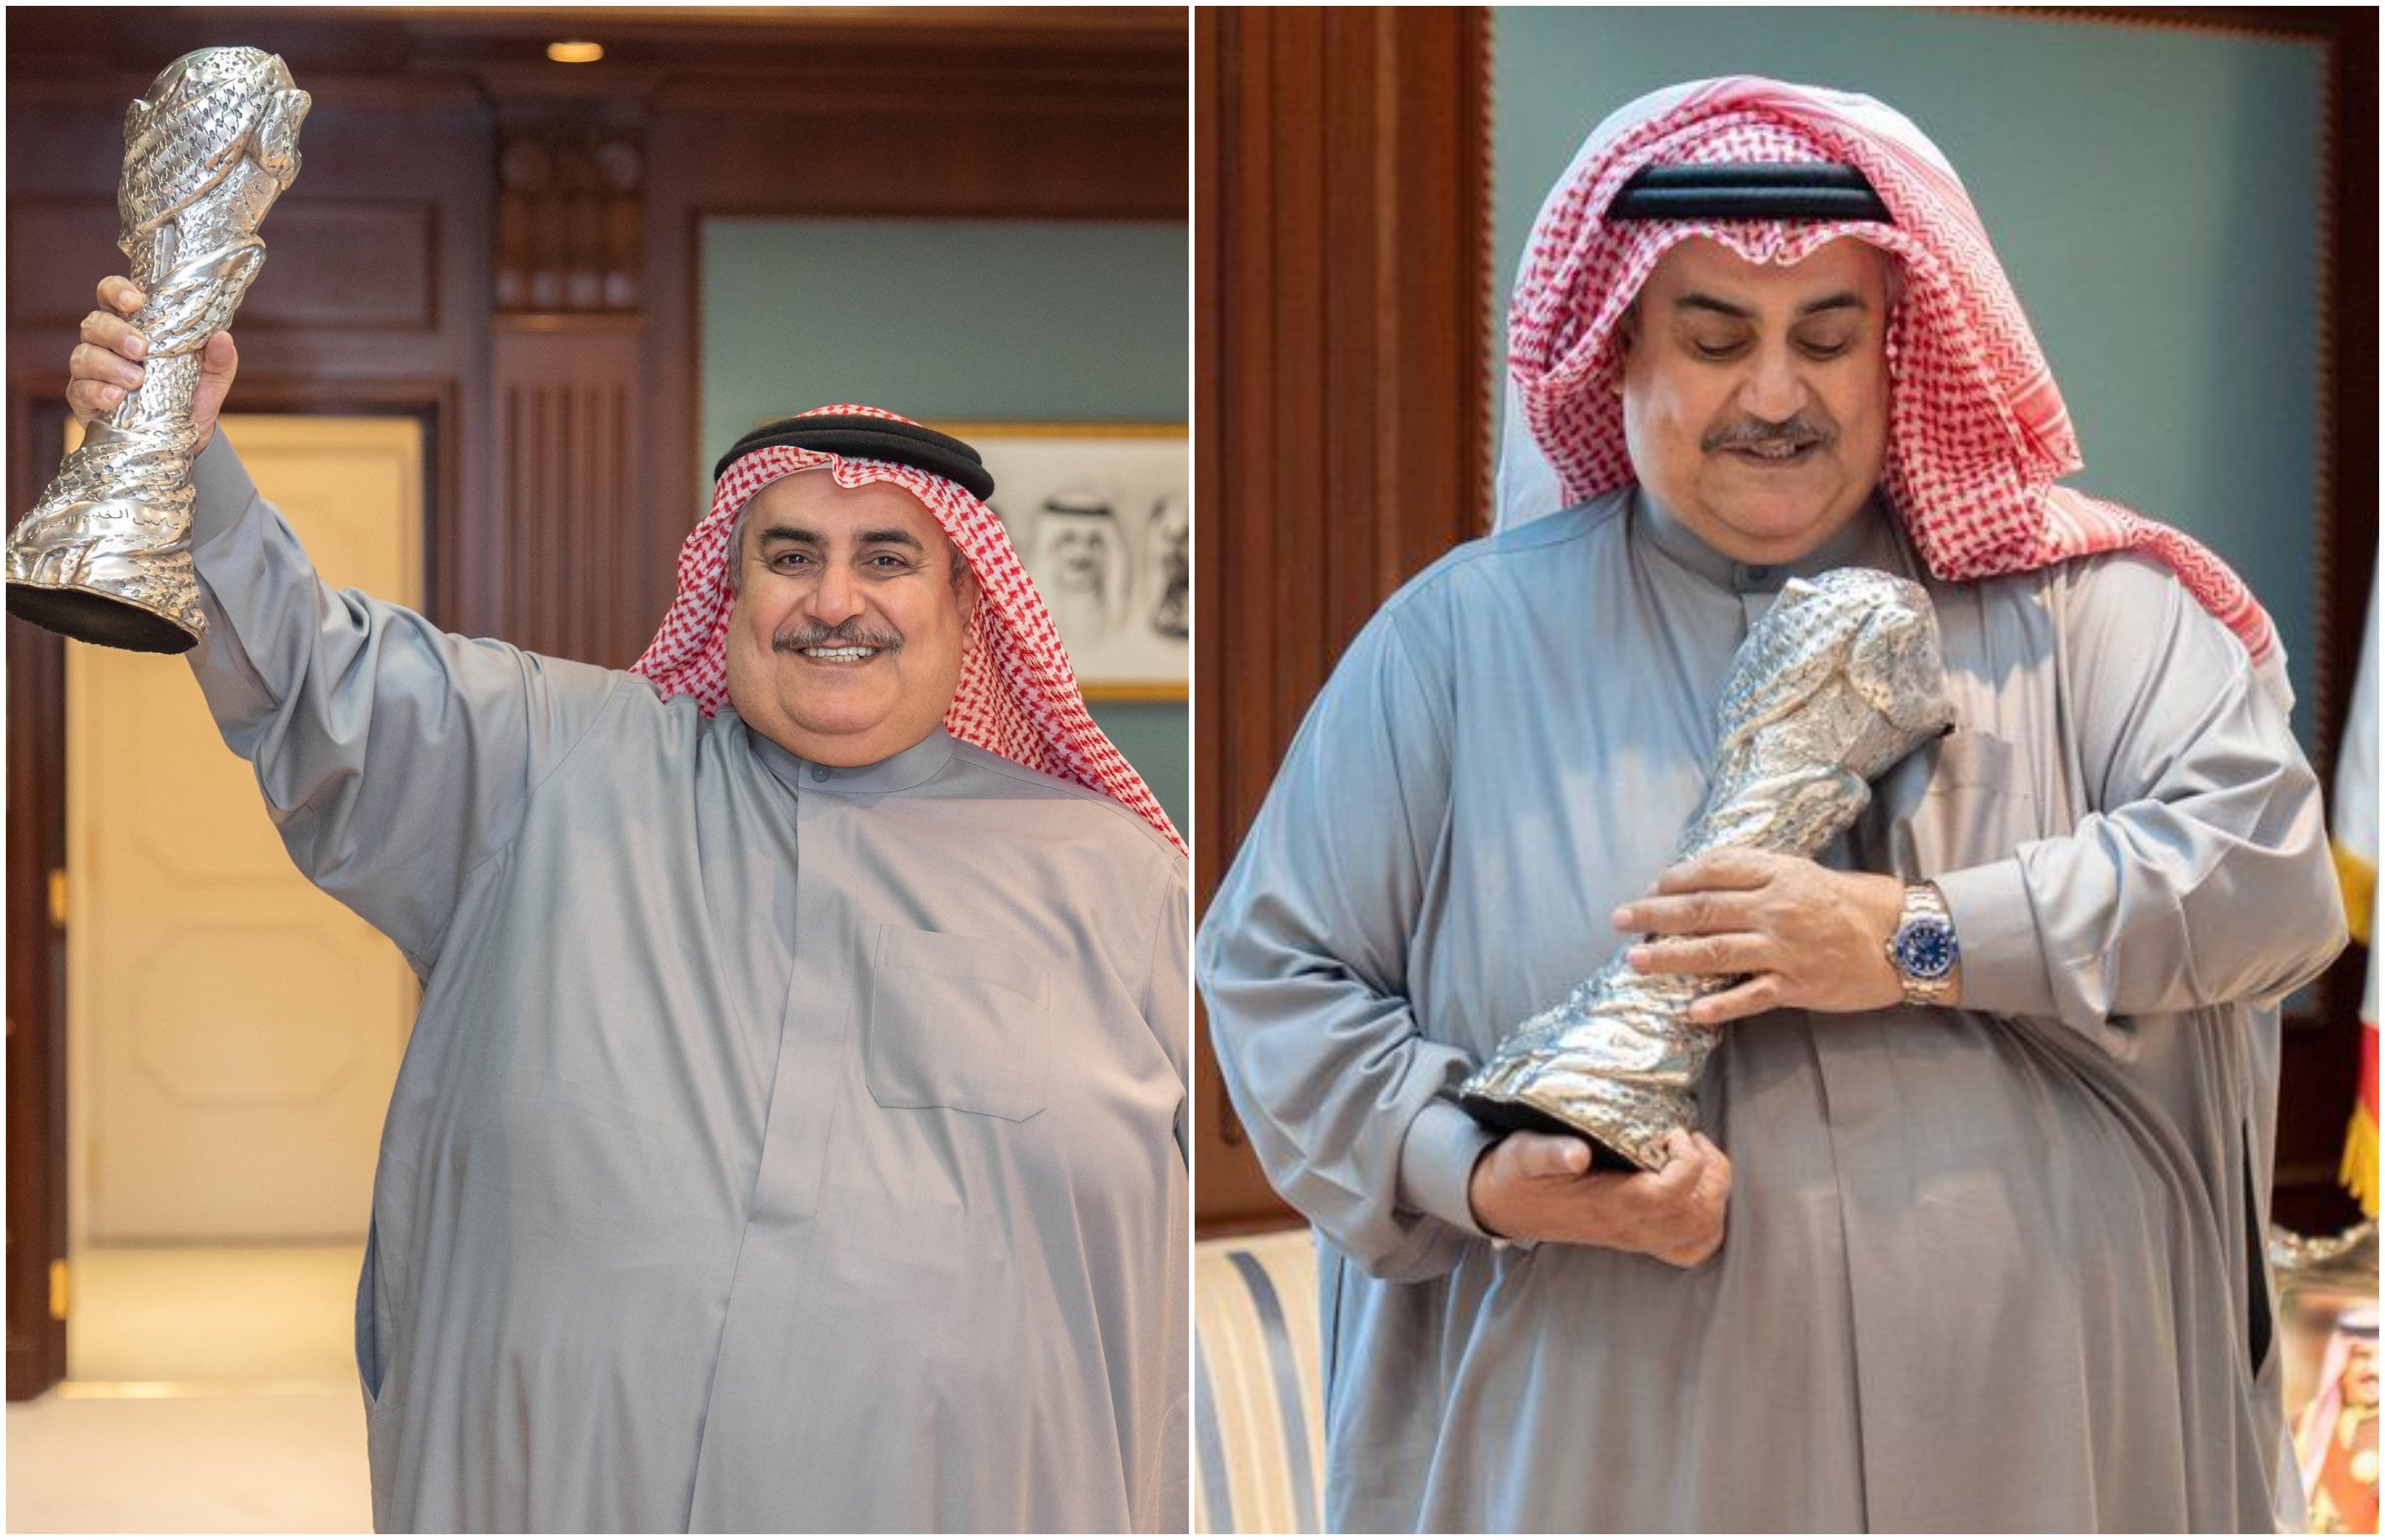 وزير خارجية البحرين ينشر صوره مع كأس الخليج 24 بعد فوز بلاده للمرة الأولى في تاريخه به ويعلق: &quot;ما تغلبونه&quot;